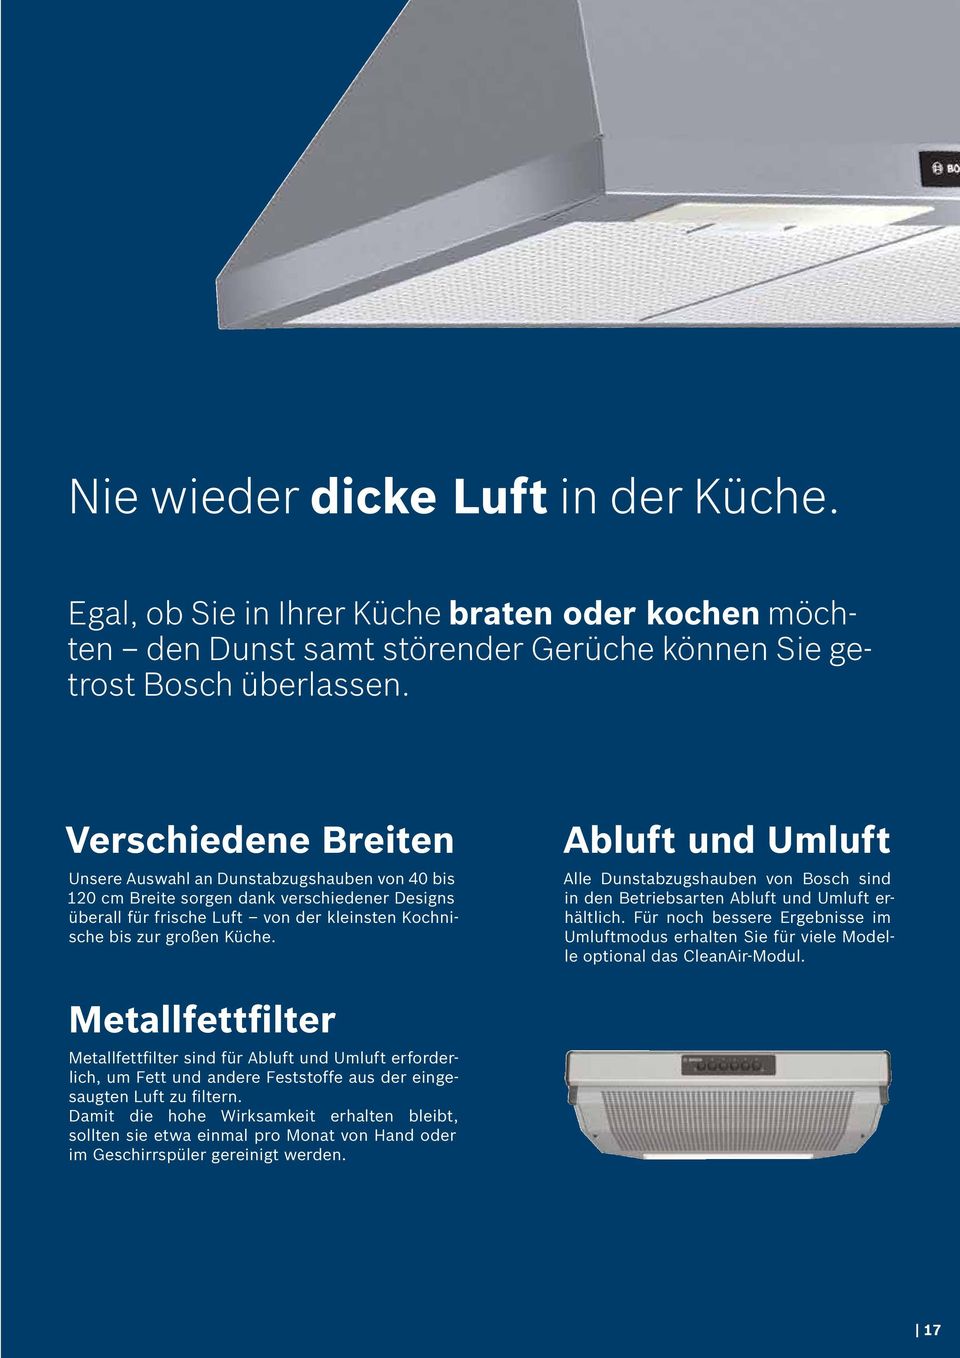 Abluft und Umluft Alle Dunstabzugshauben von Bosch sind in den Betriebsarten Abluft und Umluft erhältlich.